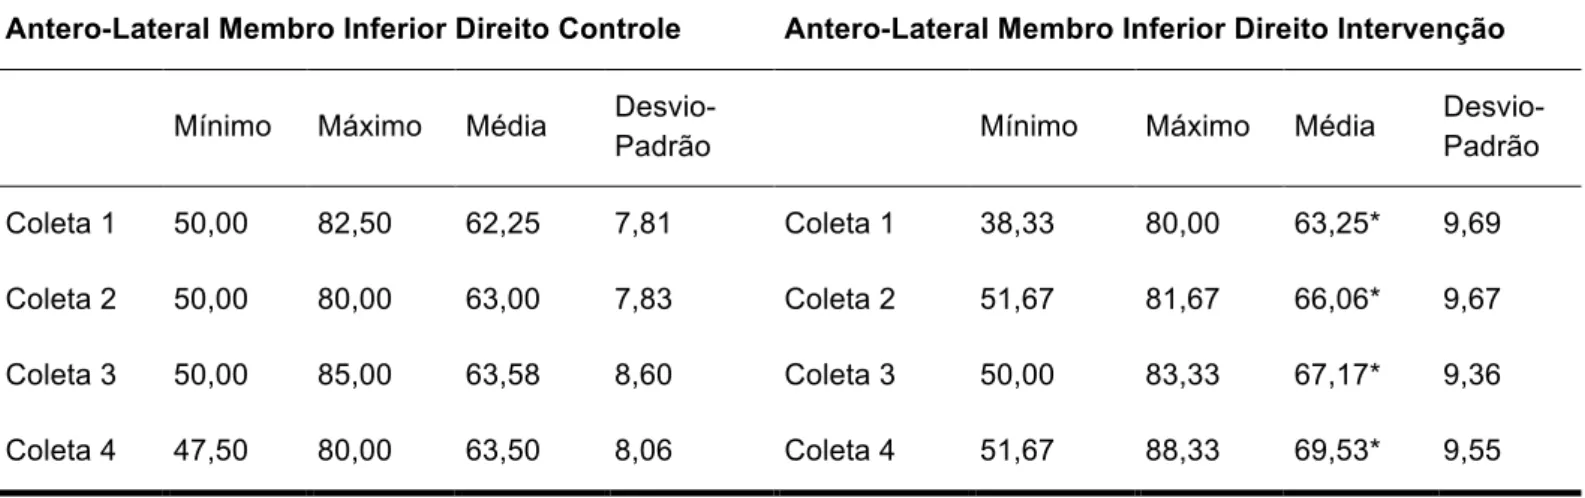 Tabela 10 - Análise descritiva da comparação da distância anterolateral do SEBT entre o grupo controle e  intervenção do MMIID 